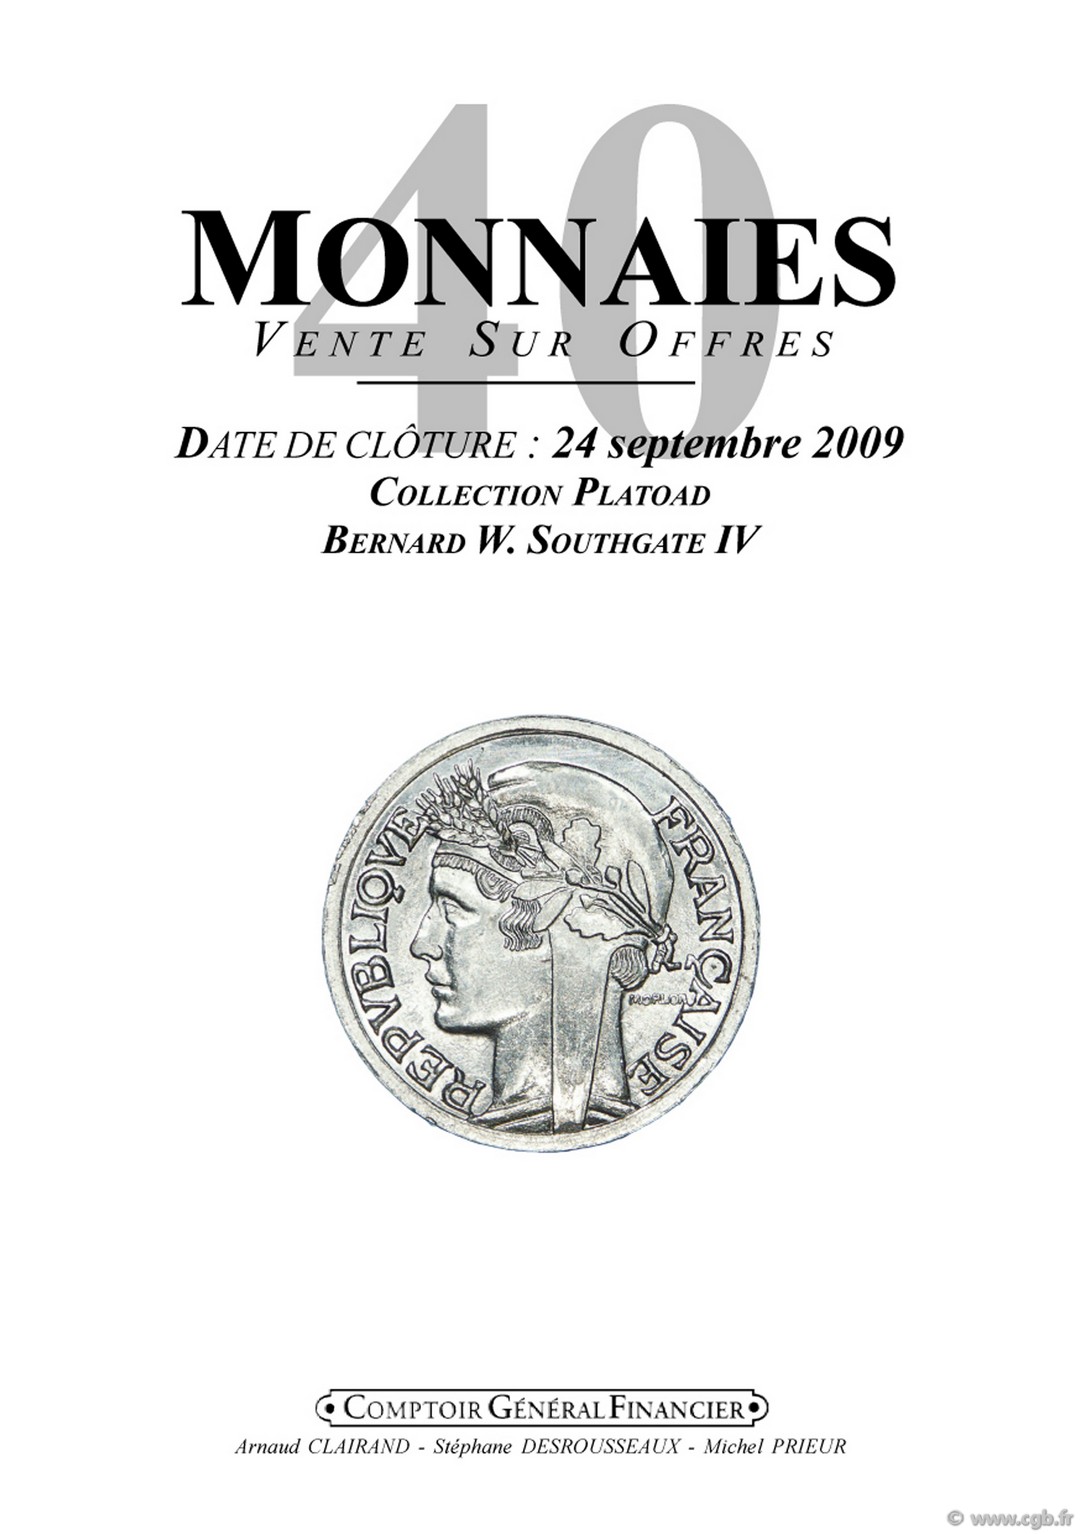 Monnaies 40 Collection Platoad Bernard W. Southgate IV CLAIRAND Arnaud, DESROUSSEAUX Stéphane, PRIEUR Michel 